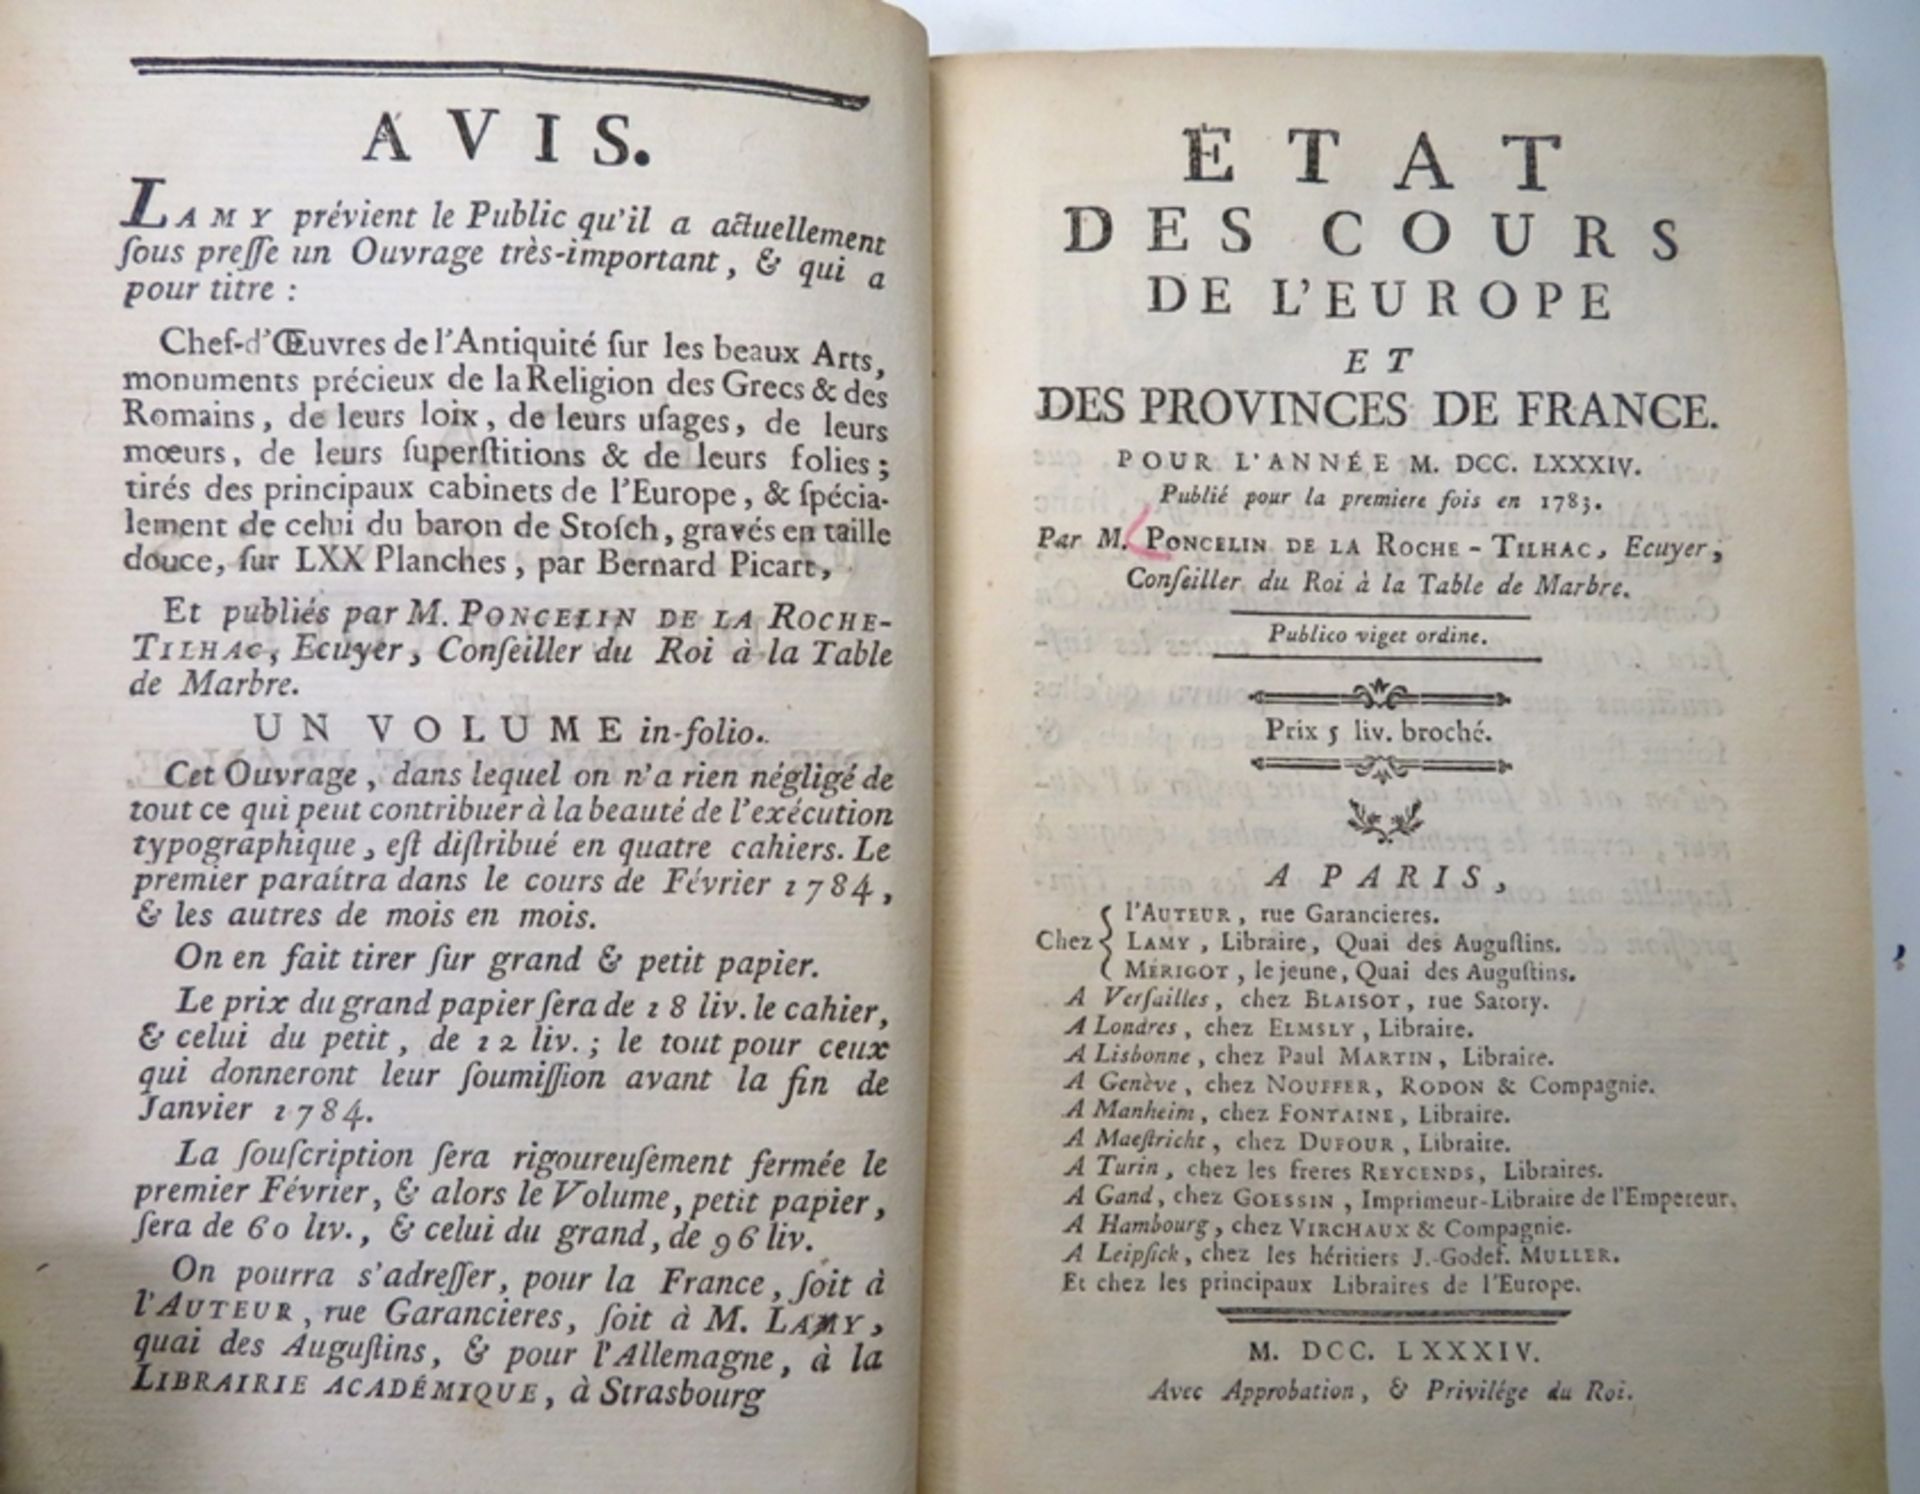 Bd., Roche-Tilhac, L'Abbé de la: Etat des Cours de l'Europe et des Provinces de France. Paris 1784 - Image 2 of 3